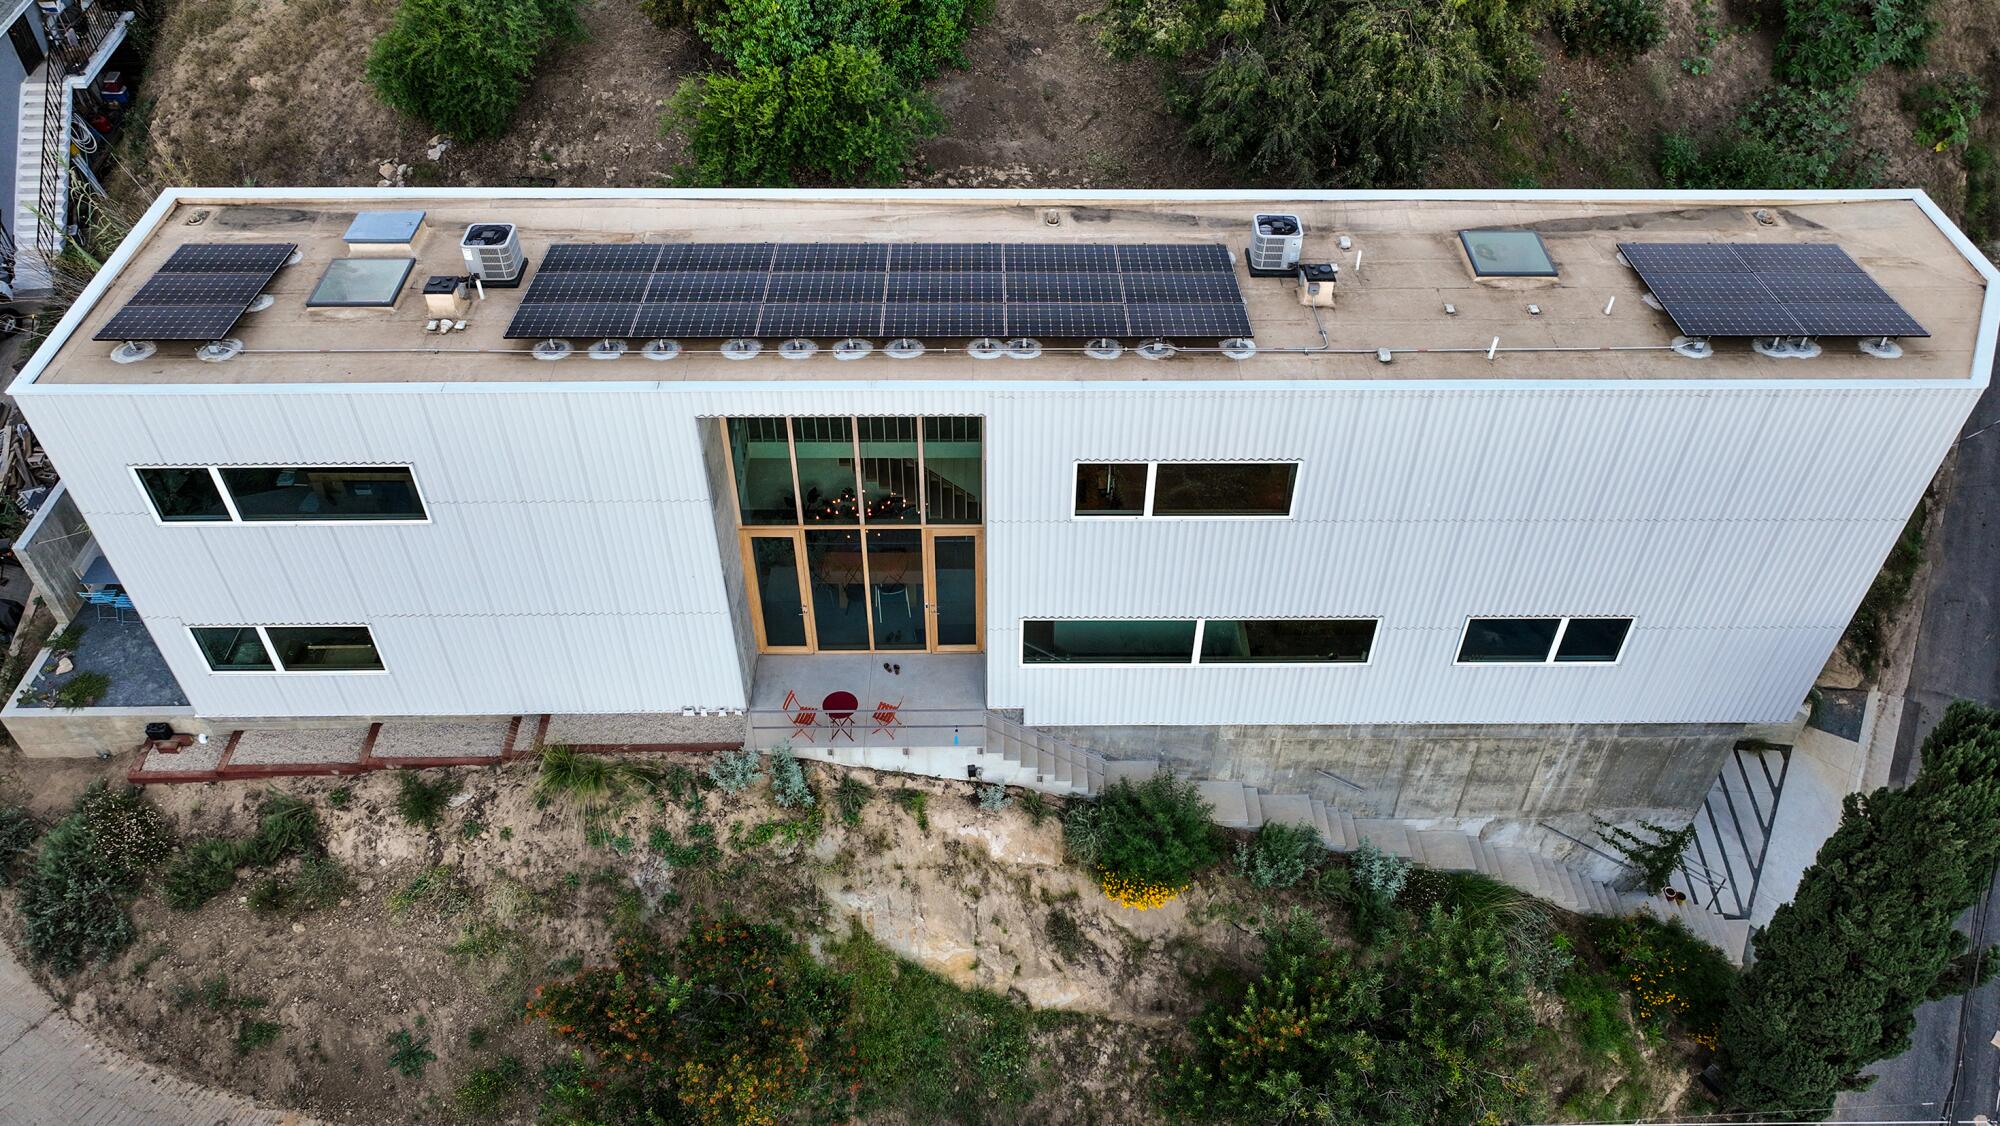 Fra oven ser du det høye, magre og lange hjemmet med store vertikale vinduer og solcellepaneler på taket.